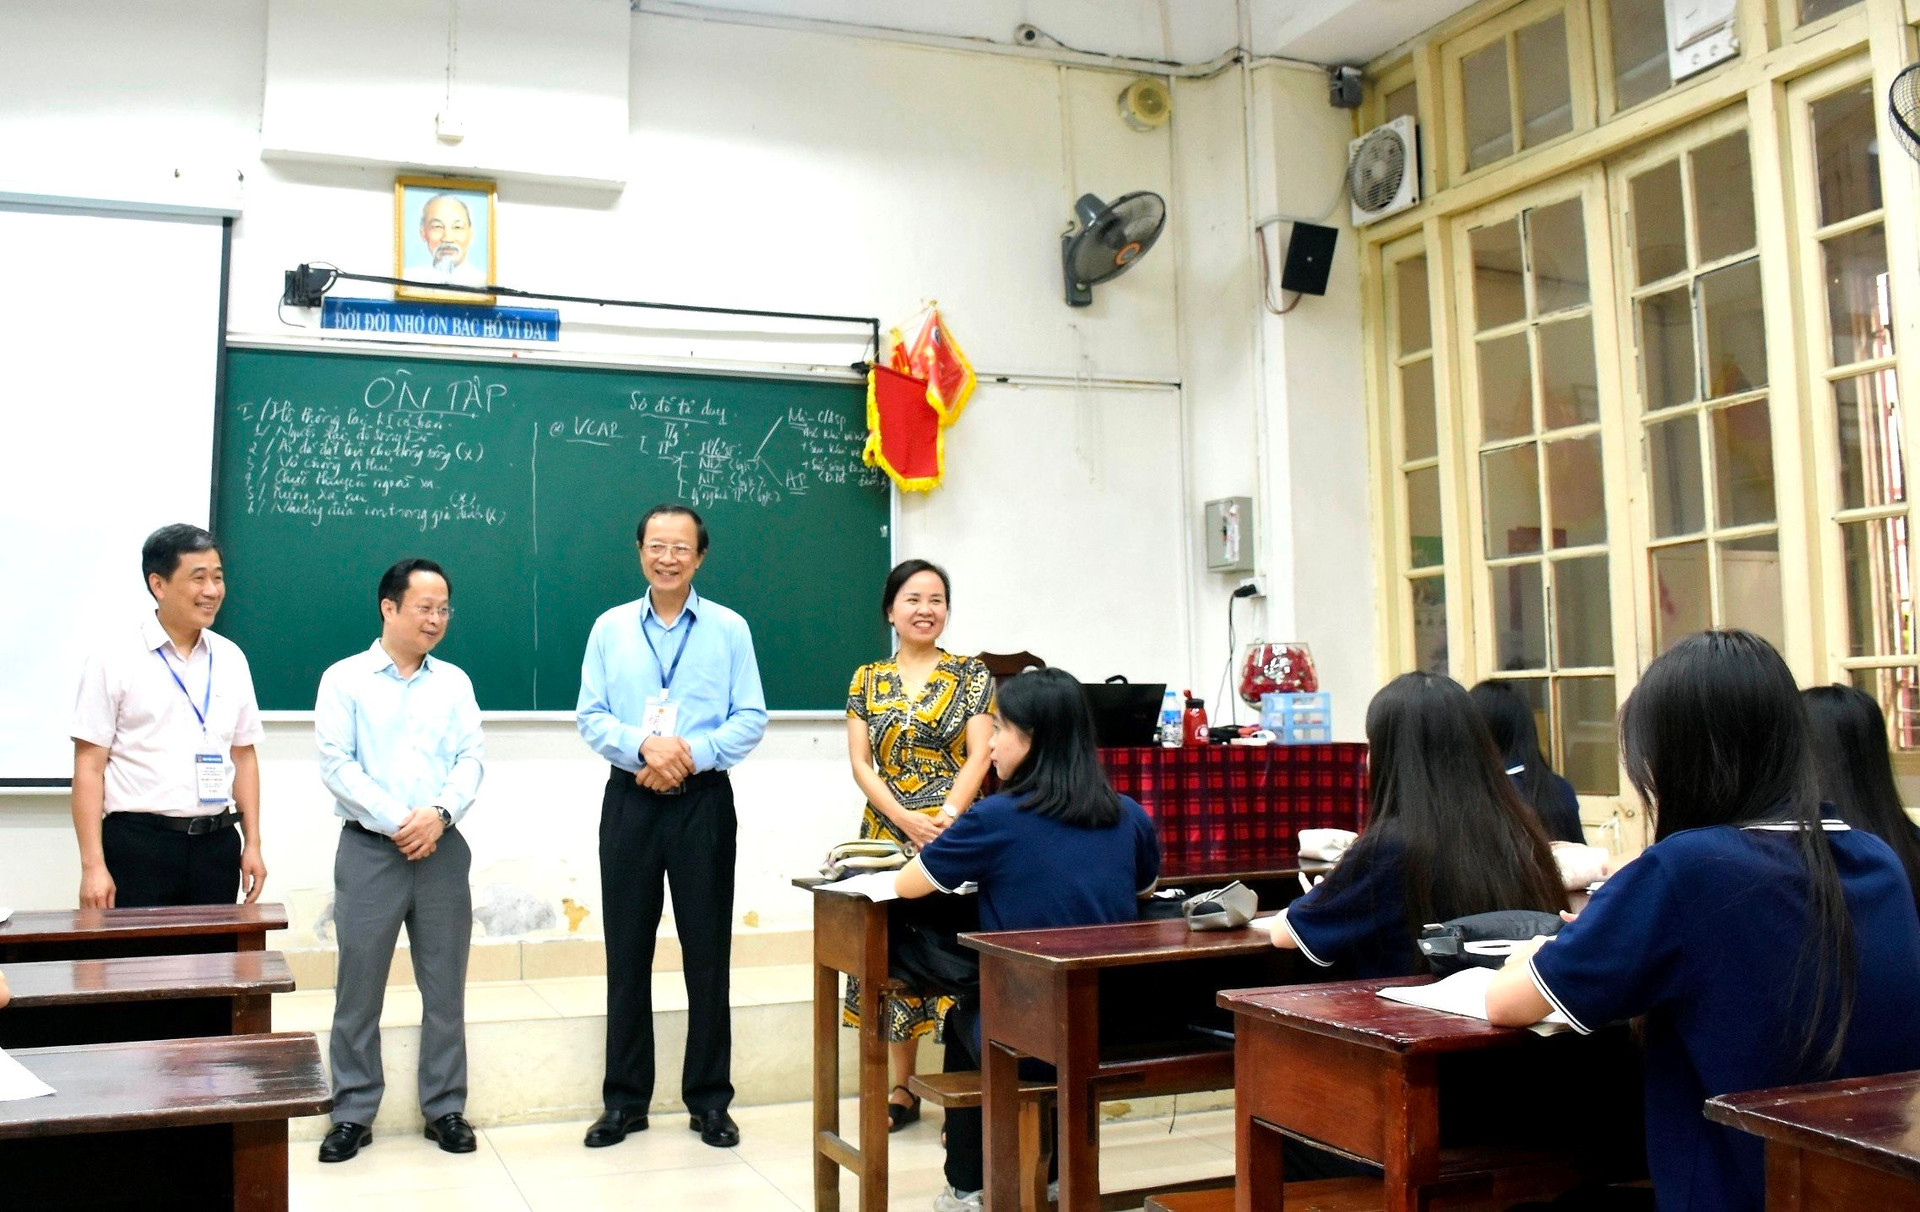 Thứ trưởng Bộ GD-ĐT Phạm Ngọc Thưởng động viên học sinh lớp Mười hai Trường THPT Trần Phú - Hoàn Kiếm, TP Hà Nội (Ảnh minh họa)